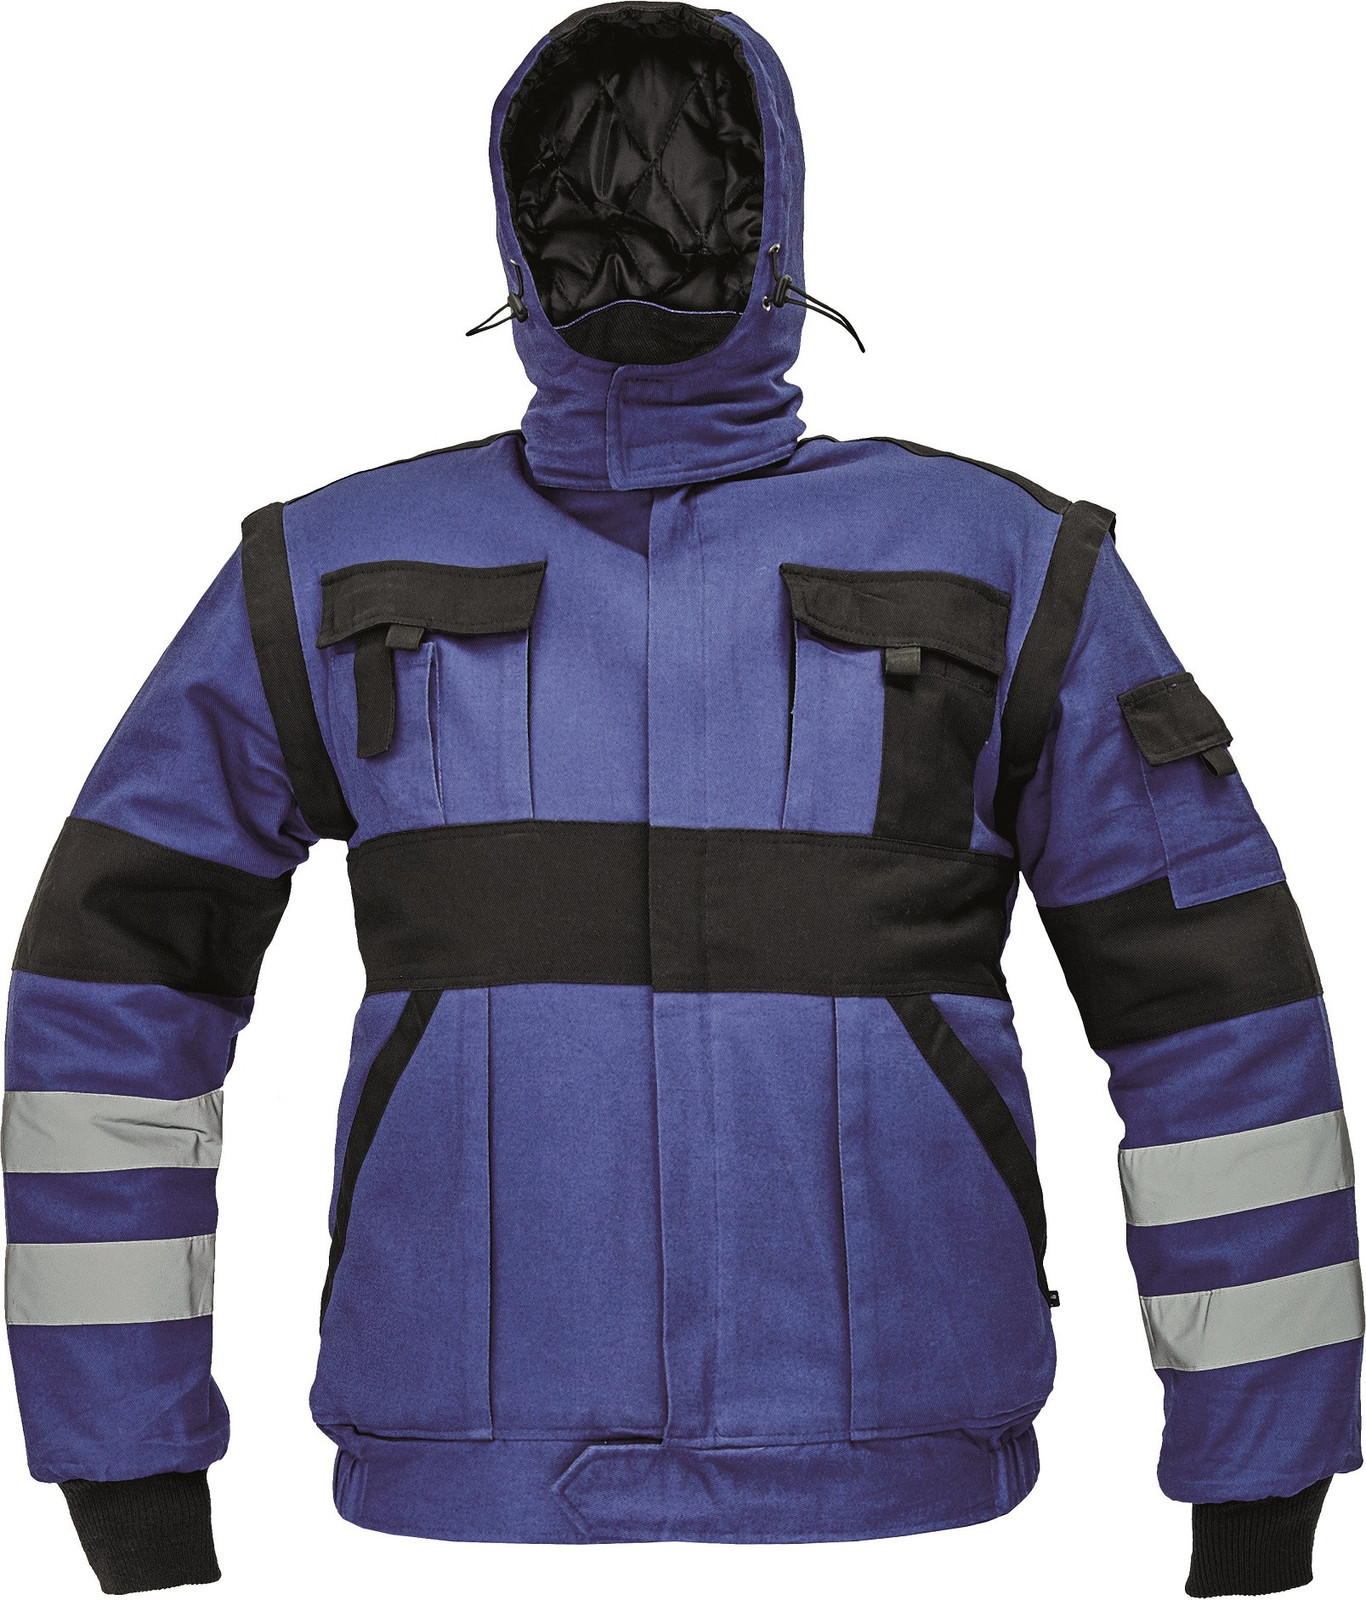 Zateplená montérková bunda Max Winter s reflexnými pruhmi 2v1 - veľkosť: 58, farba: modrá/čierna